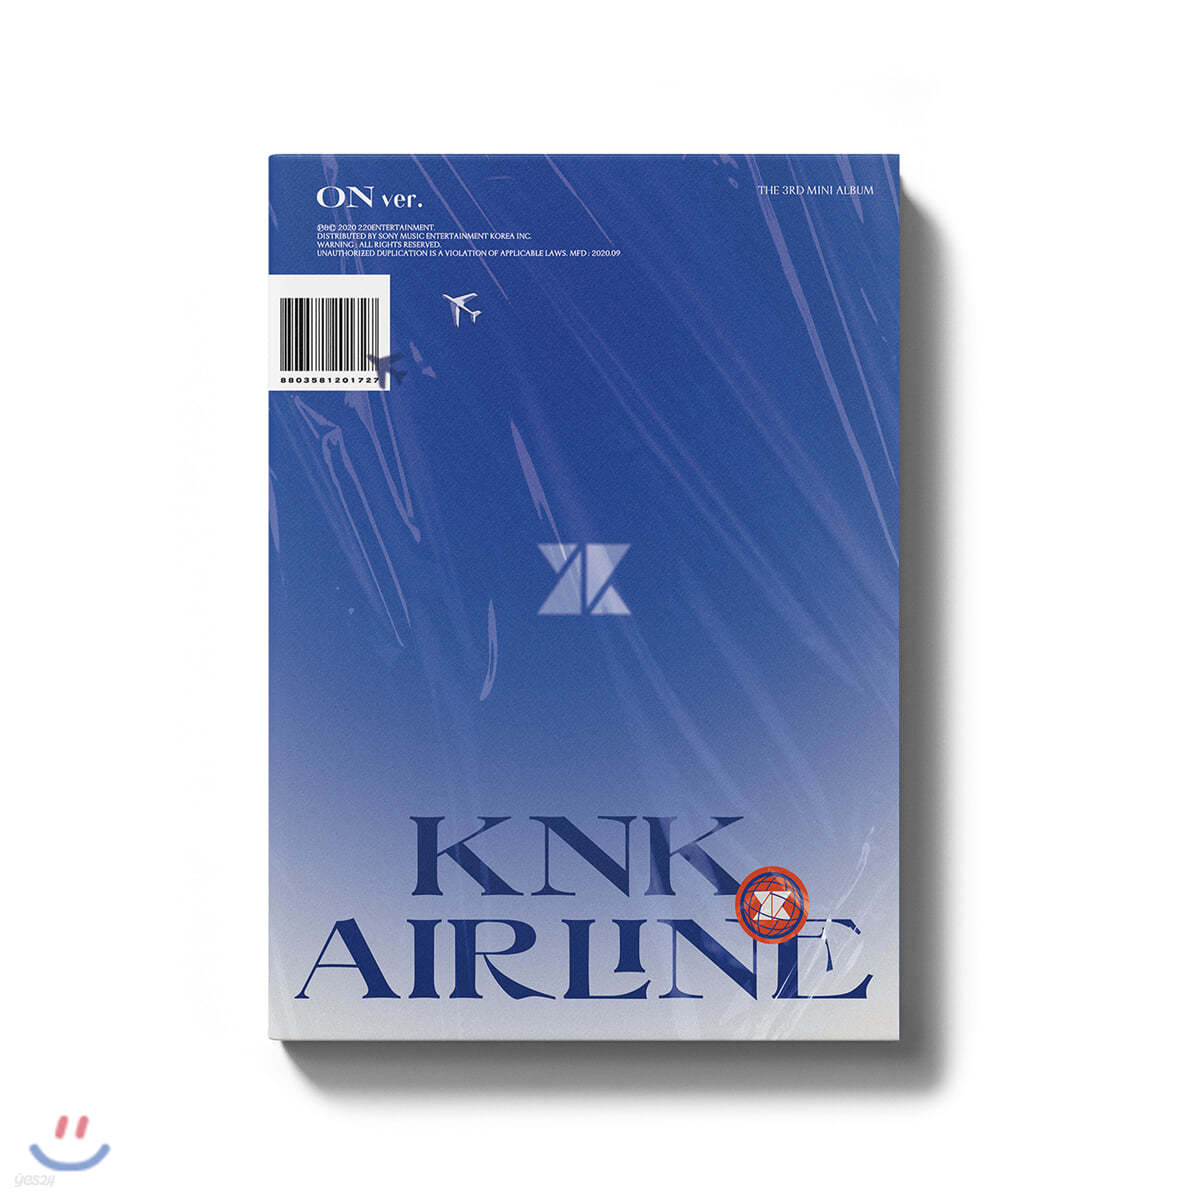 크나큰 (KNK) - 미니앨범 3집 : KNK AIRLINE [ON ver.]